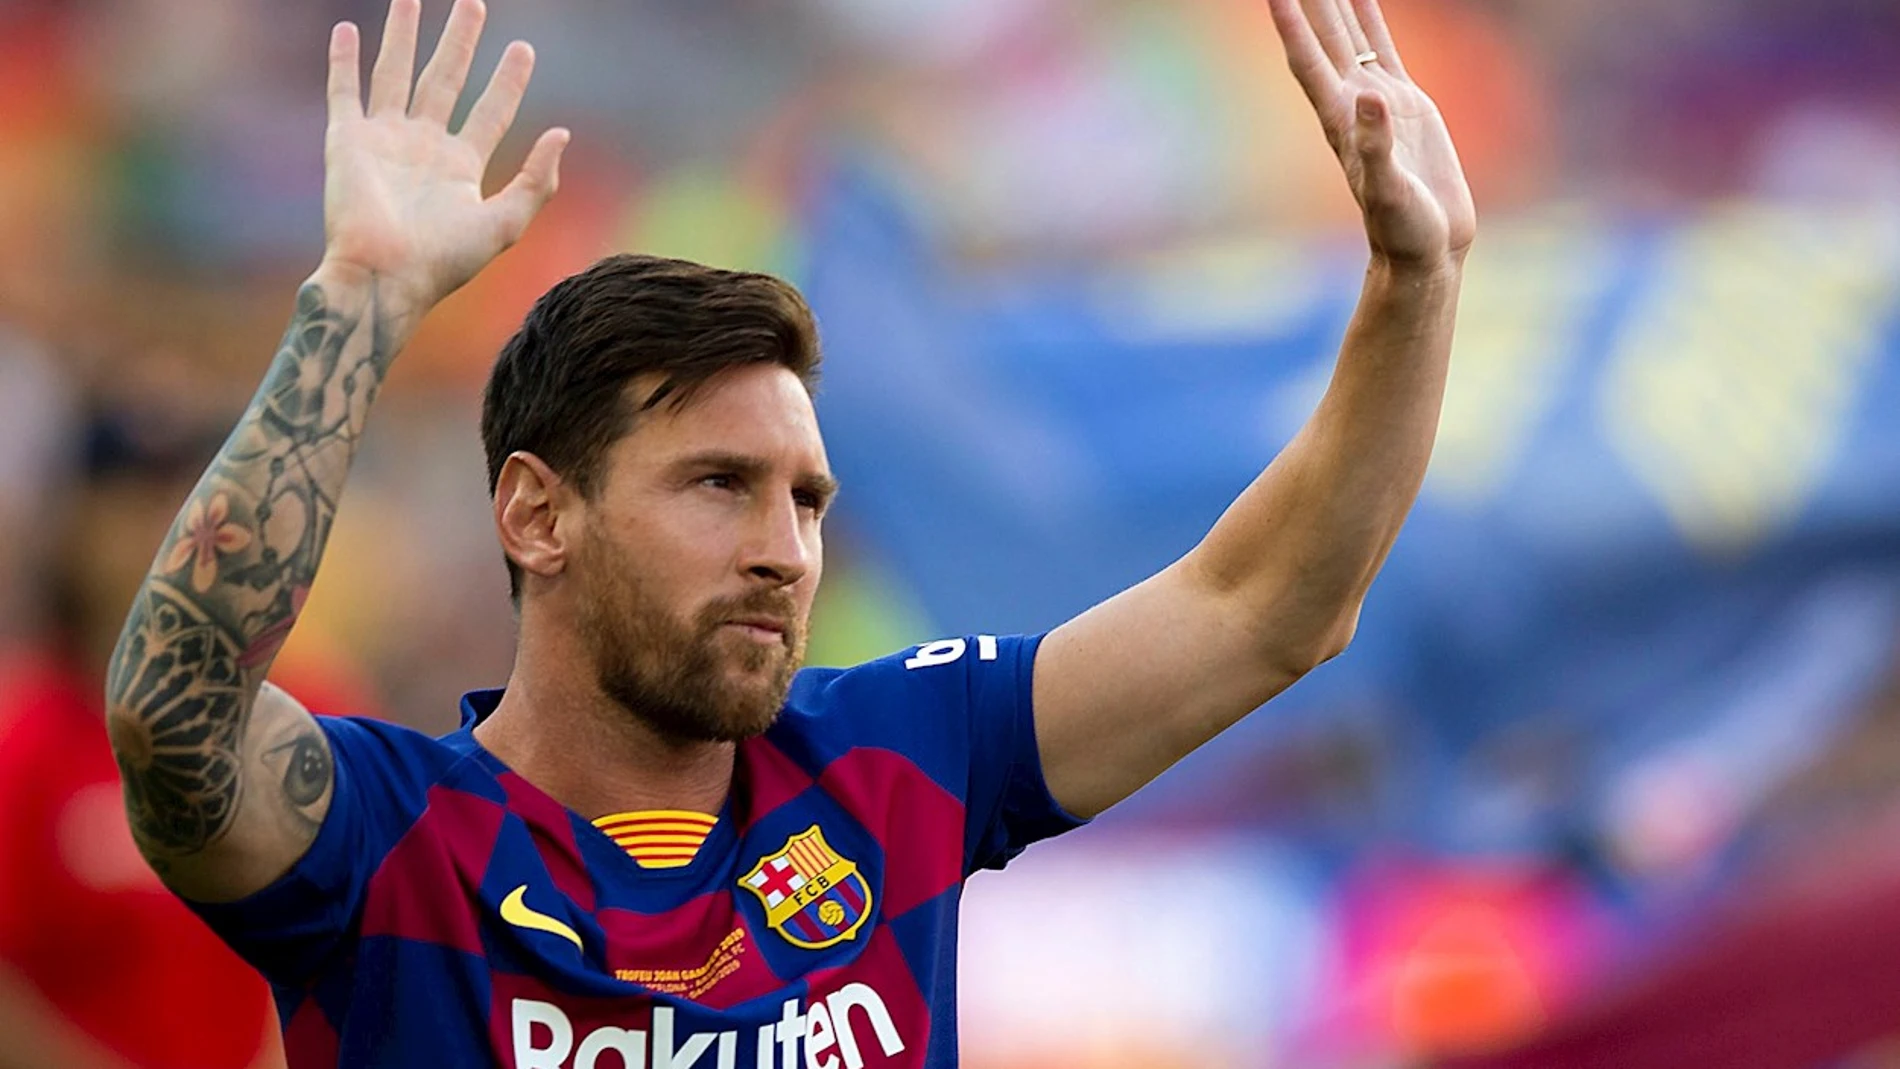 El capitán y delantero argentino del FC Barcelona, Leo Messi, saluda a la afición momentos antes del partido de Trofeo Joan Gamper de 2019 ante al Arsenal en el Camp Nou, en Barcelona.